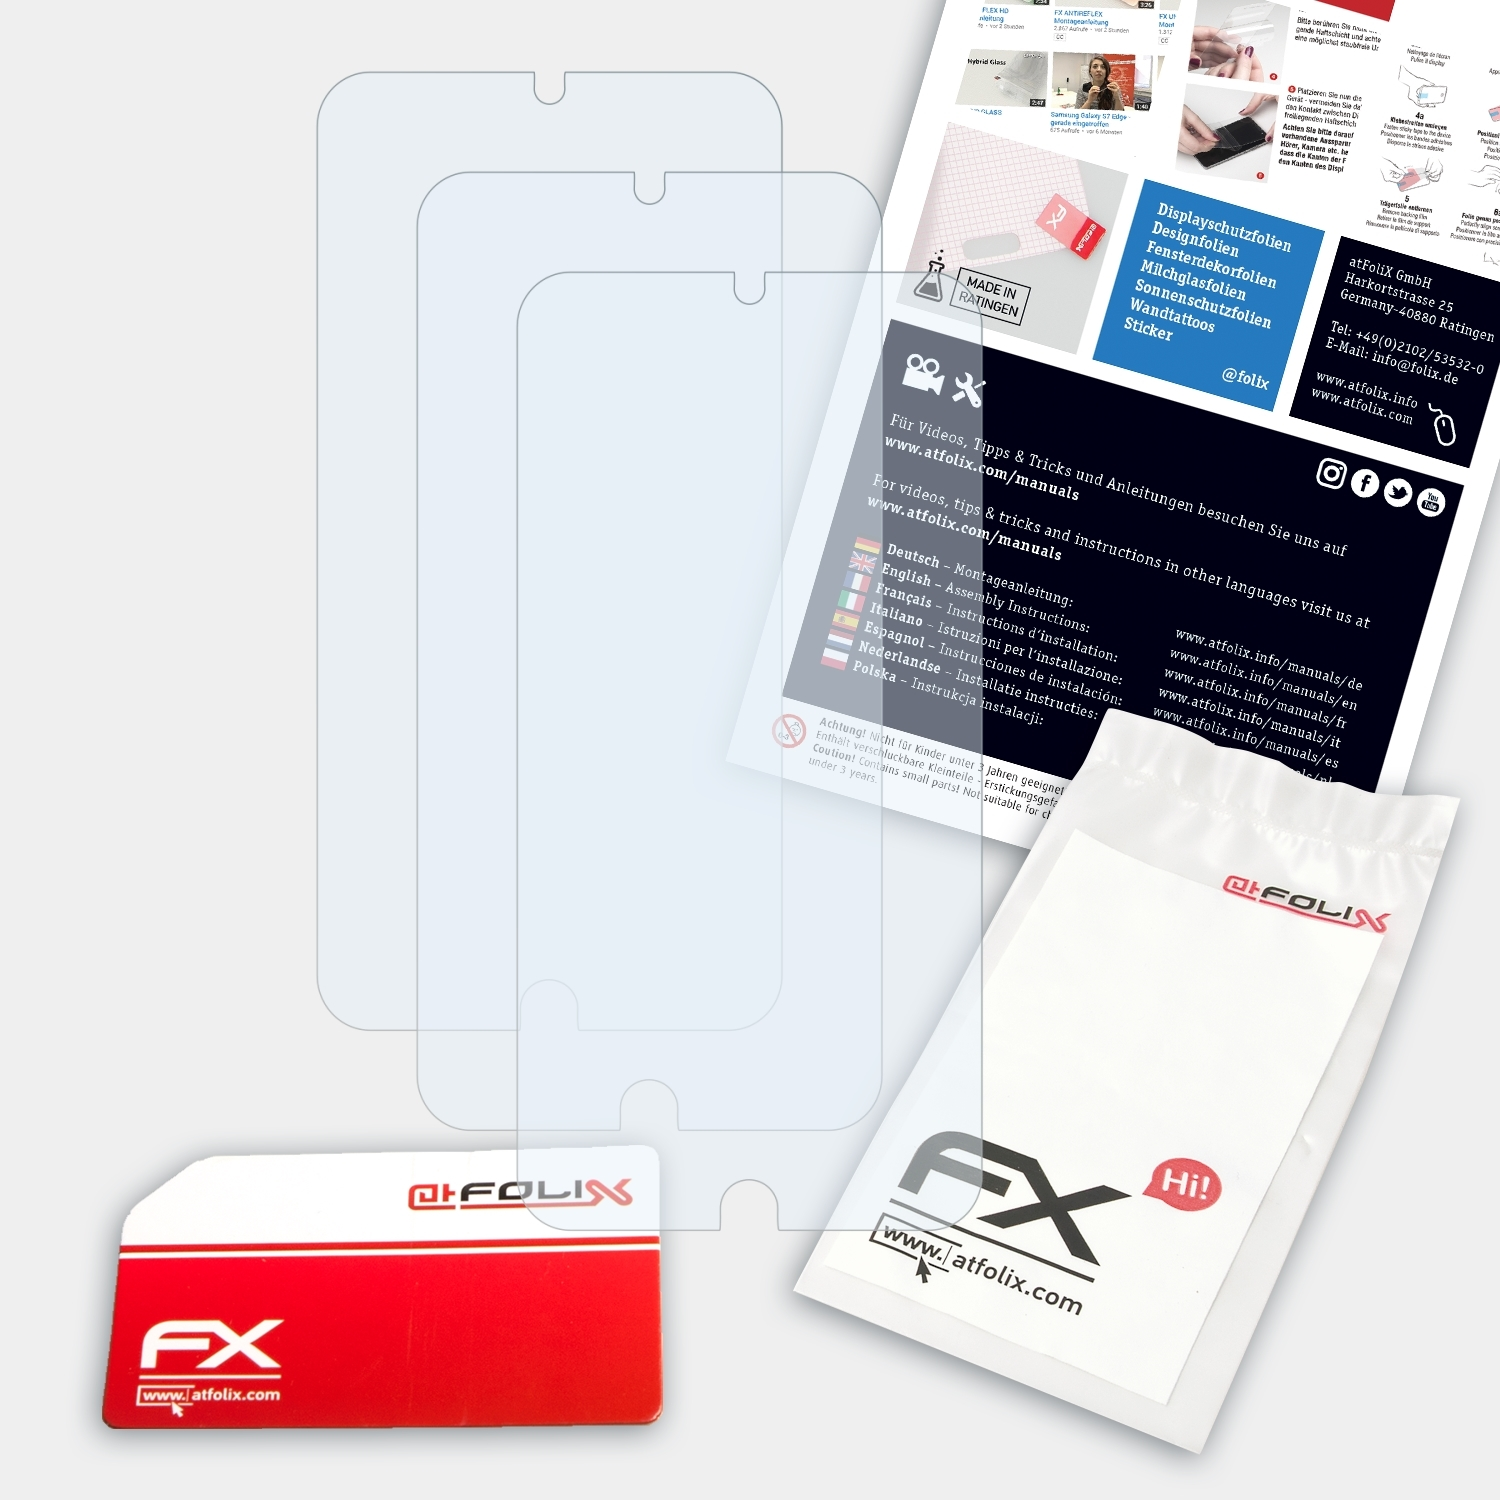 ATFOLIX 3x Meizu FX-Clear 15) Displayschutz(für